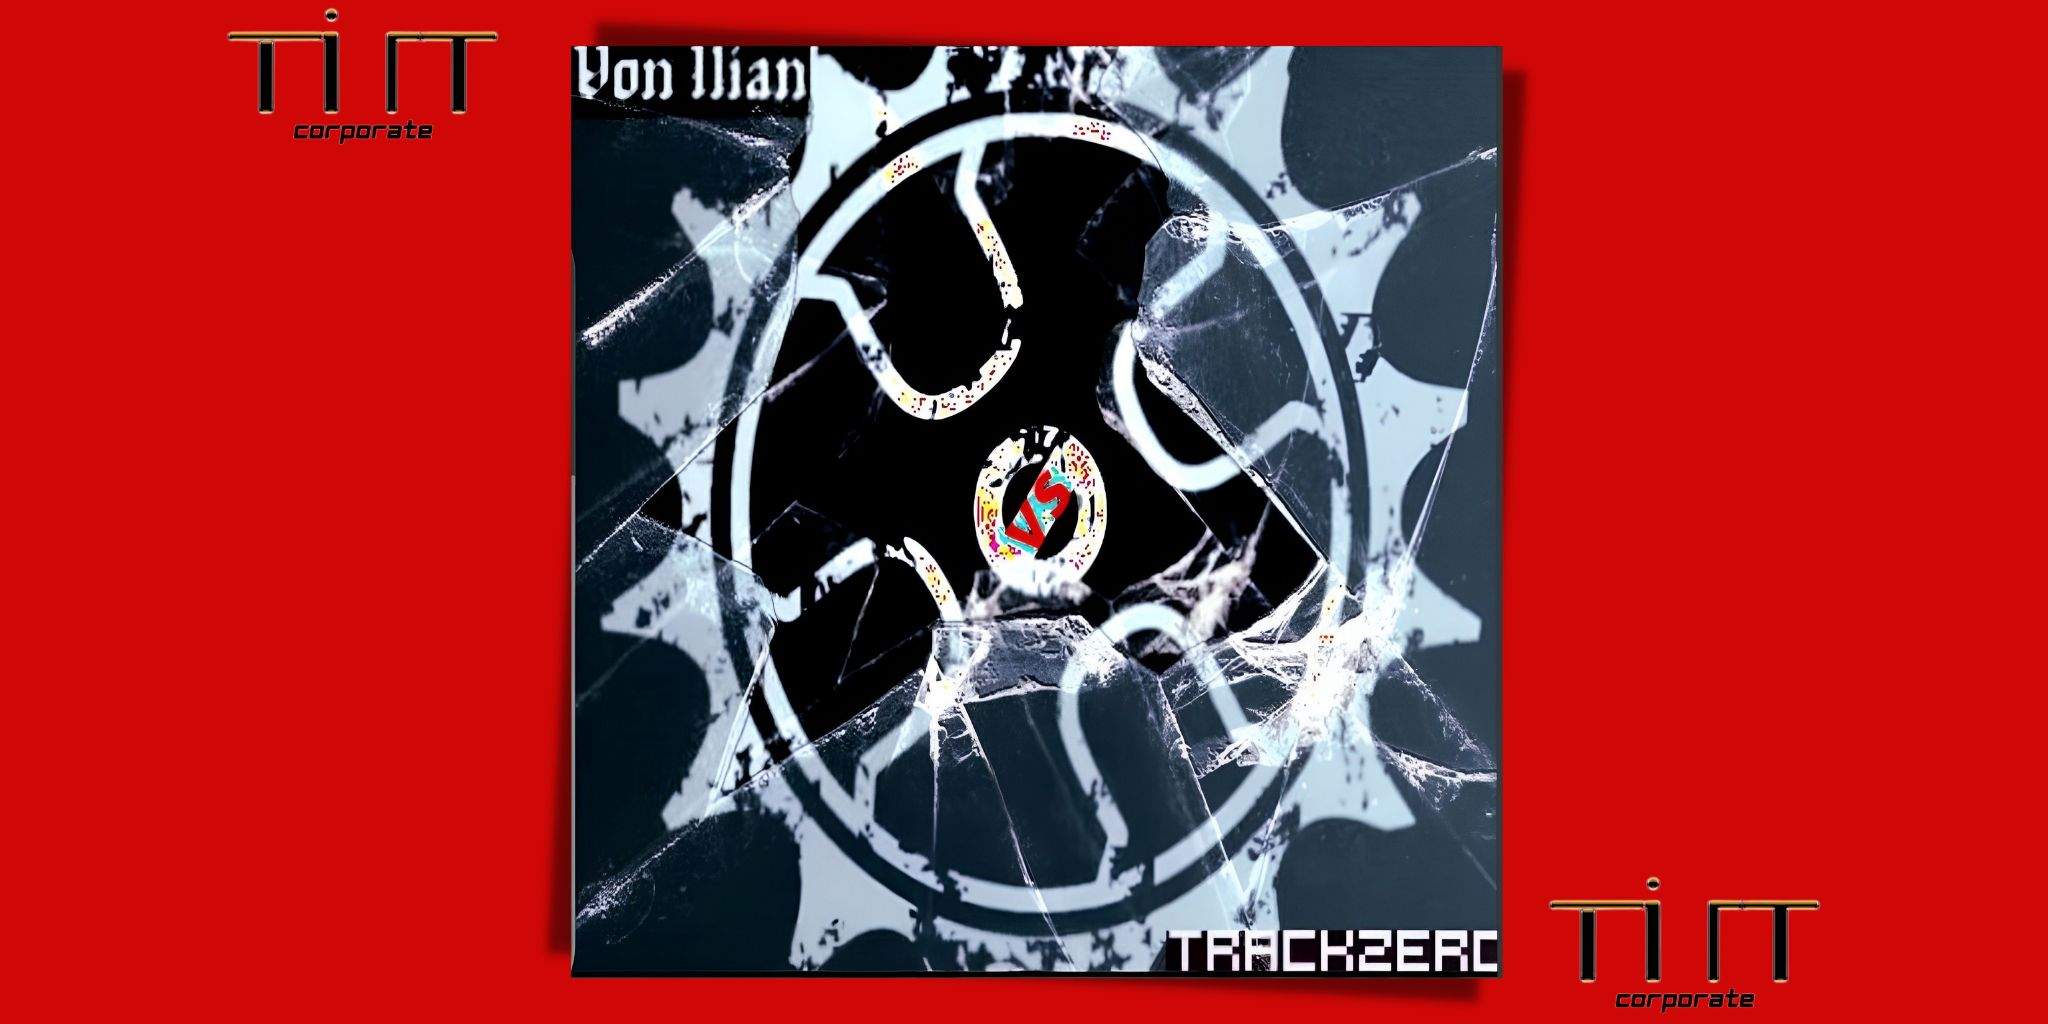 VON ILIAN vs TRACKZERO è il nuovo album di Von Ilian!!